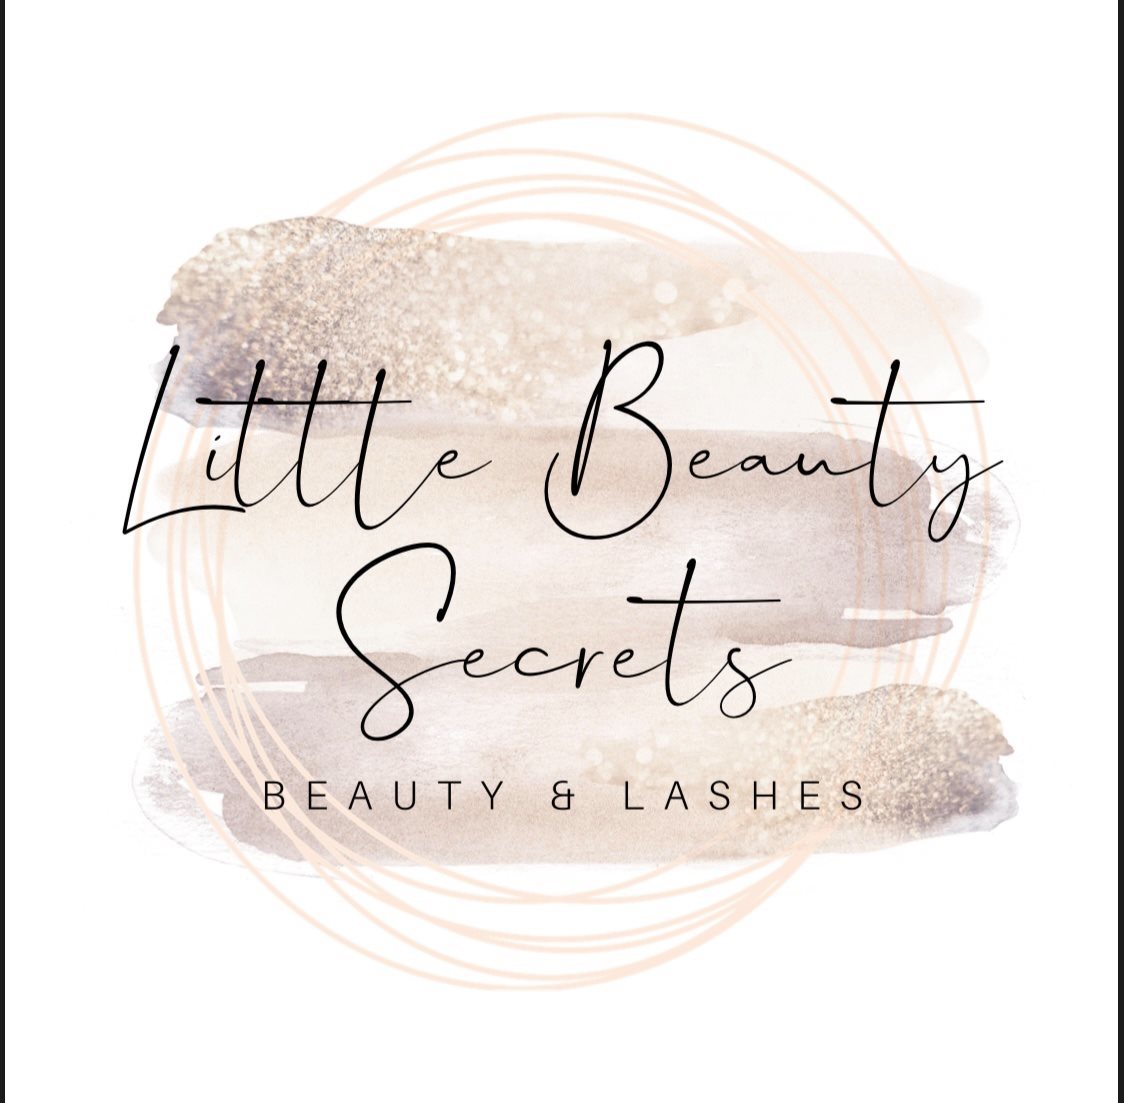 Little Beauty Secrets